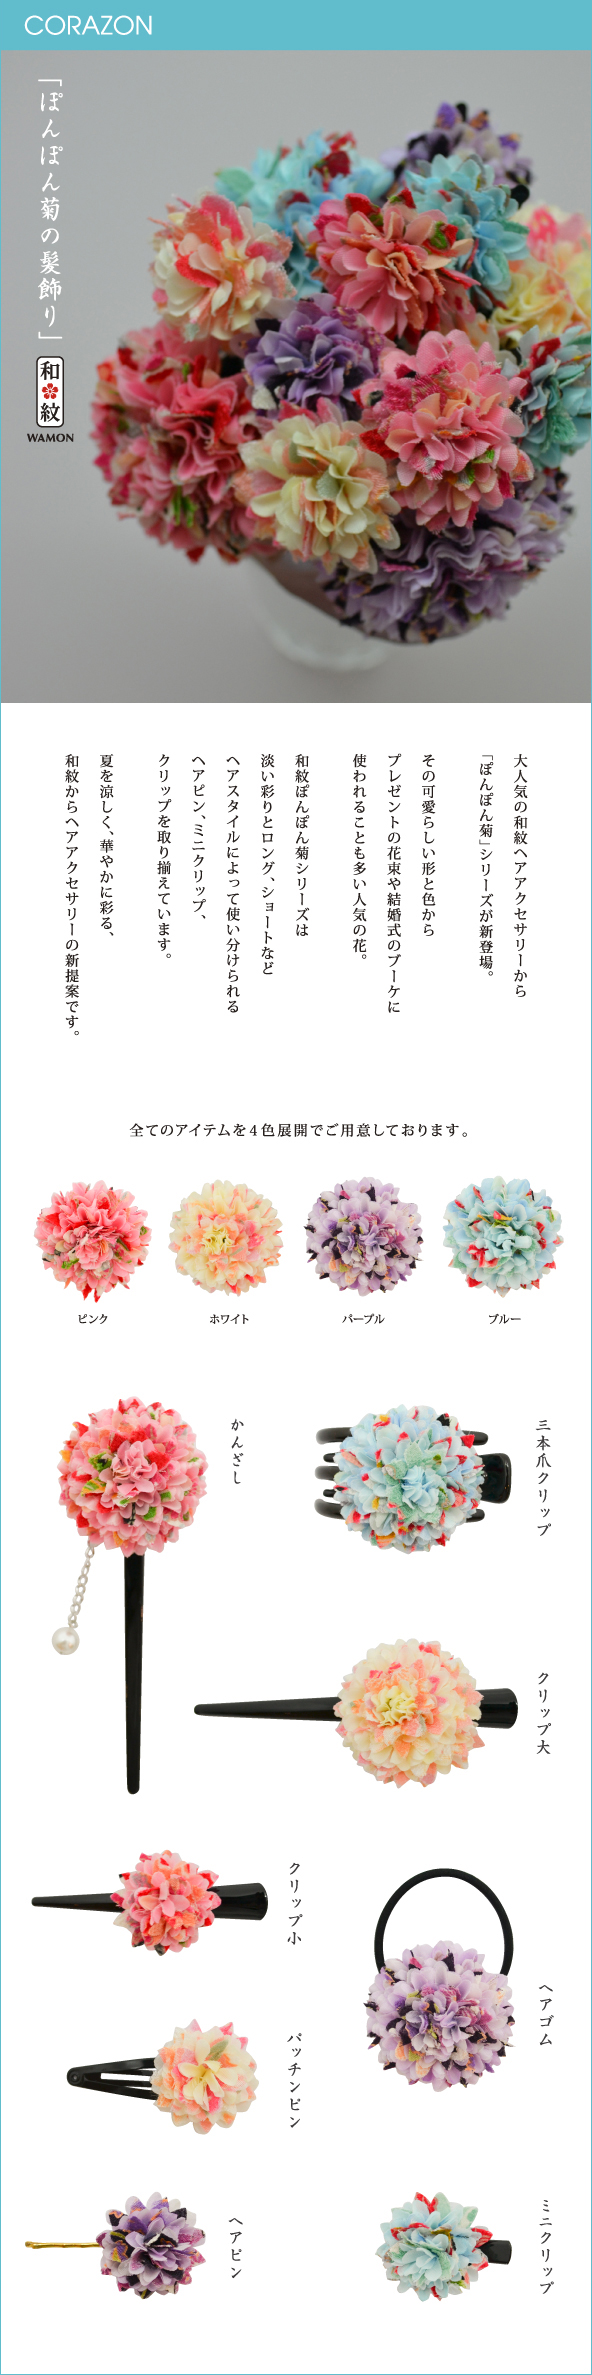 CORAZONメルマガ　20150707<br>

「ぽんぽん菊の髪飾り」<br>
大人気のヘアアクセサリーから<br>
「ぽんぽん菊」シリーズが新登場。<br>
その可愛いらしい形と色から<br>
プレゼントの花束や結婚式のブーケに<br>
使われることも多い人気の花。<br>
和紋ぽんぽん菊シリーズは<br>
淡い彩りとロング、ショートなど<br>
ヘアスタイルによって使い分けられる<br>
ヘアピン、ミニクリップ、<br>
クリップを取り揃えています。<br>
夏を涼しく、華やかに彩る、<br>
和紋からヘアアクセサリーの新提案です。<br>
<br>
